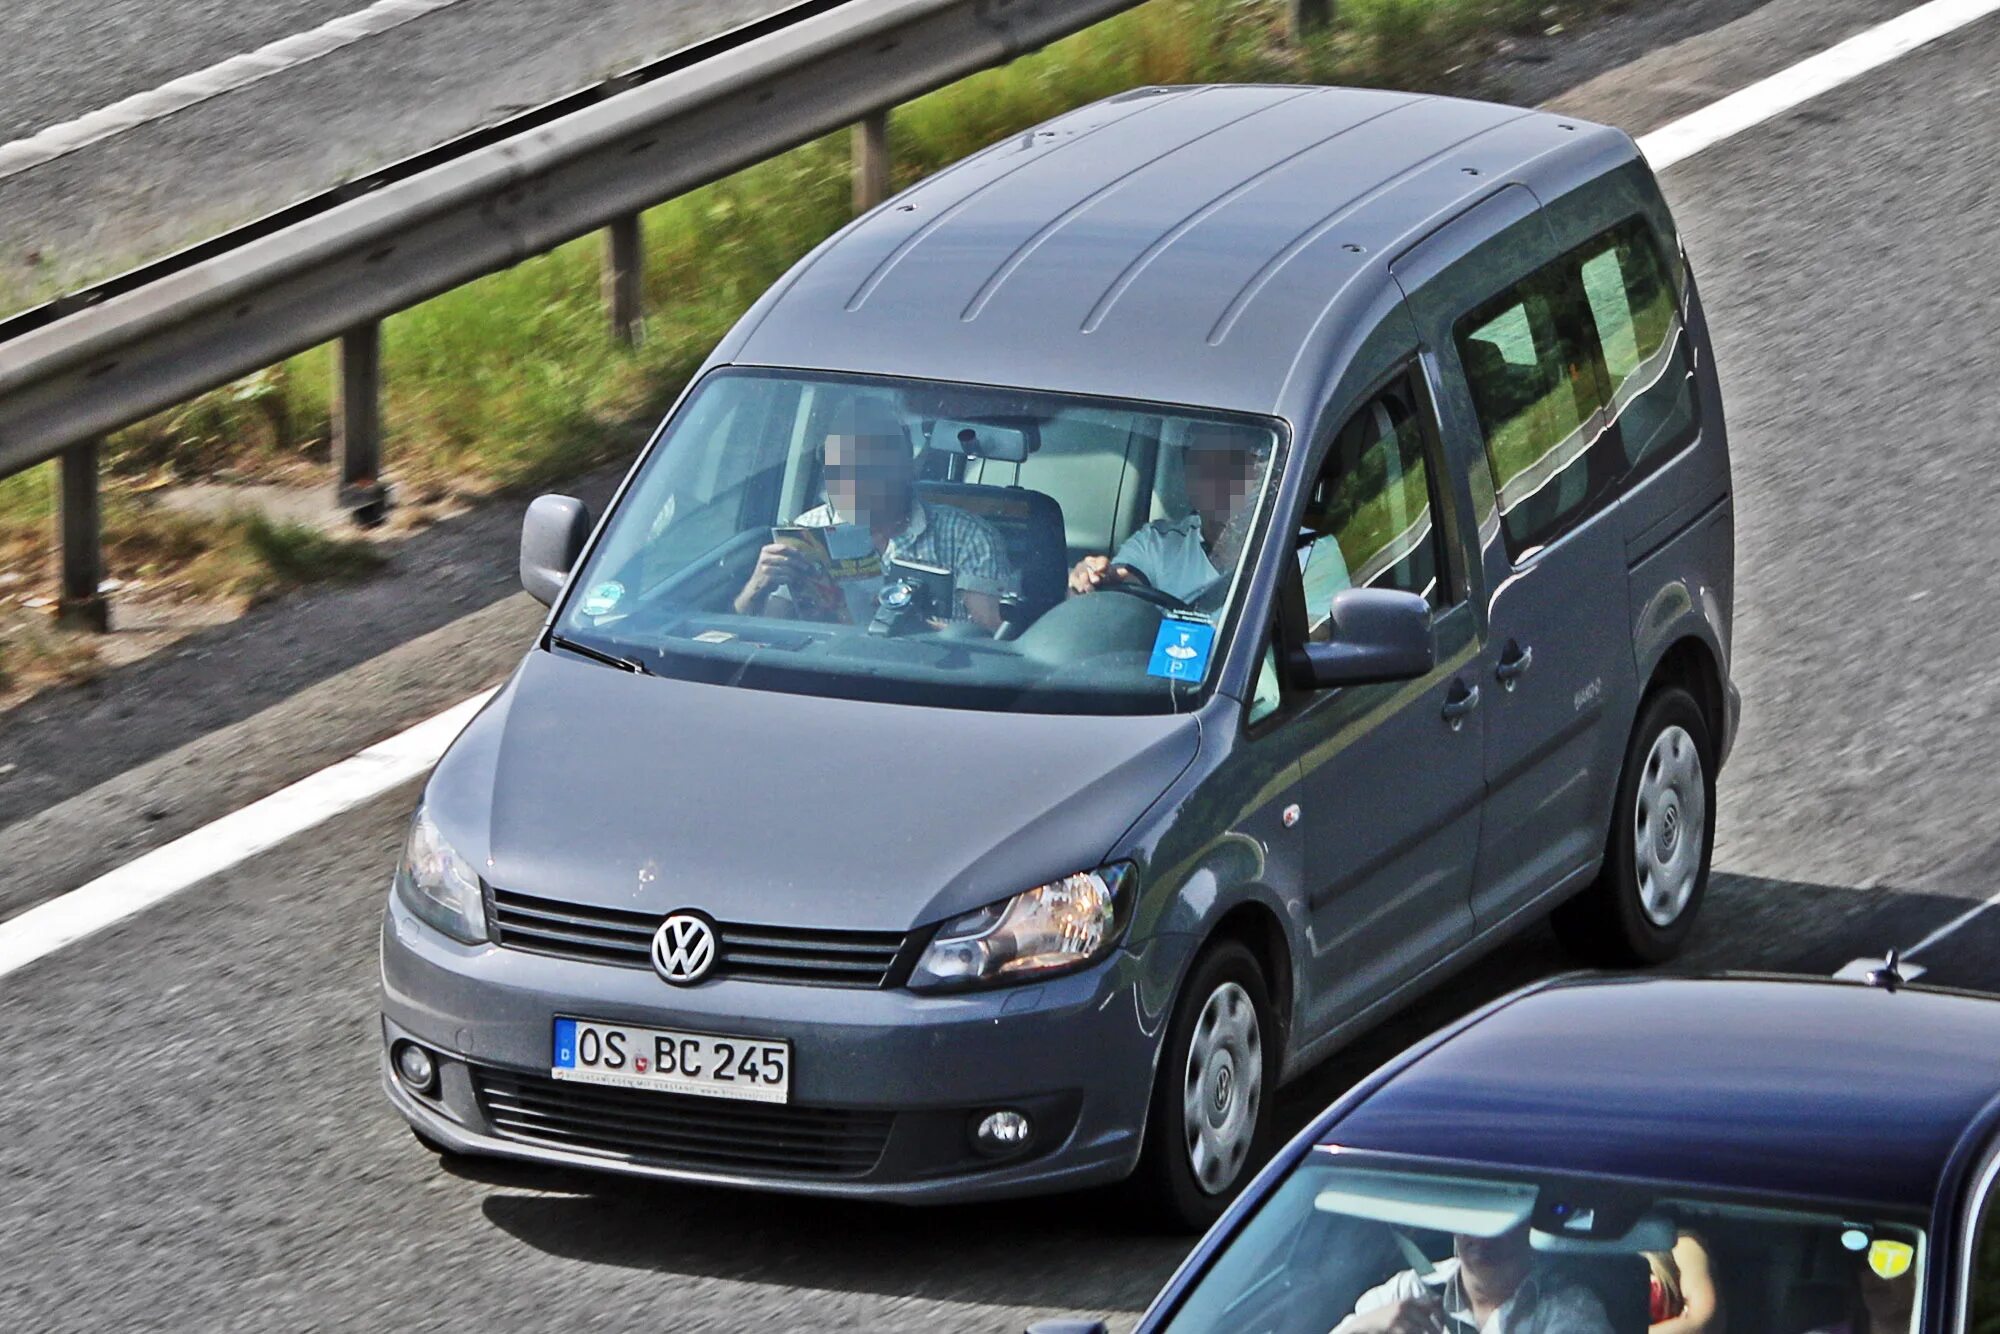 Купить фольксваген в германии. Фольксваген 245. Фольксваген с немецкими номерами. Разборка автомобили Volkswagen Caddy в Германии. Volkswagen Caddy HD foto Tuning.